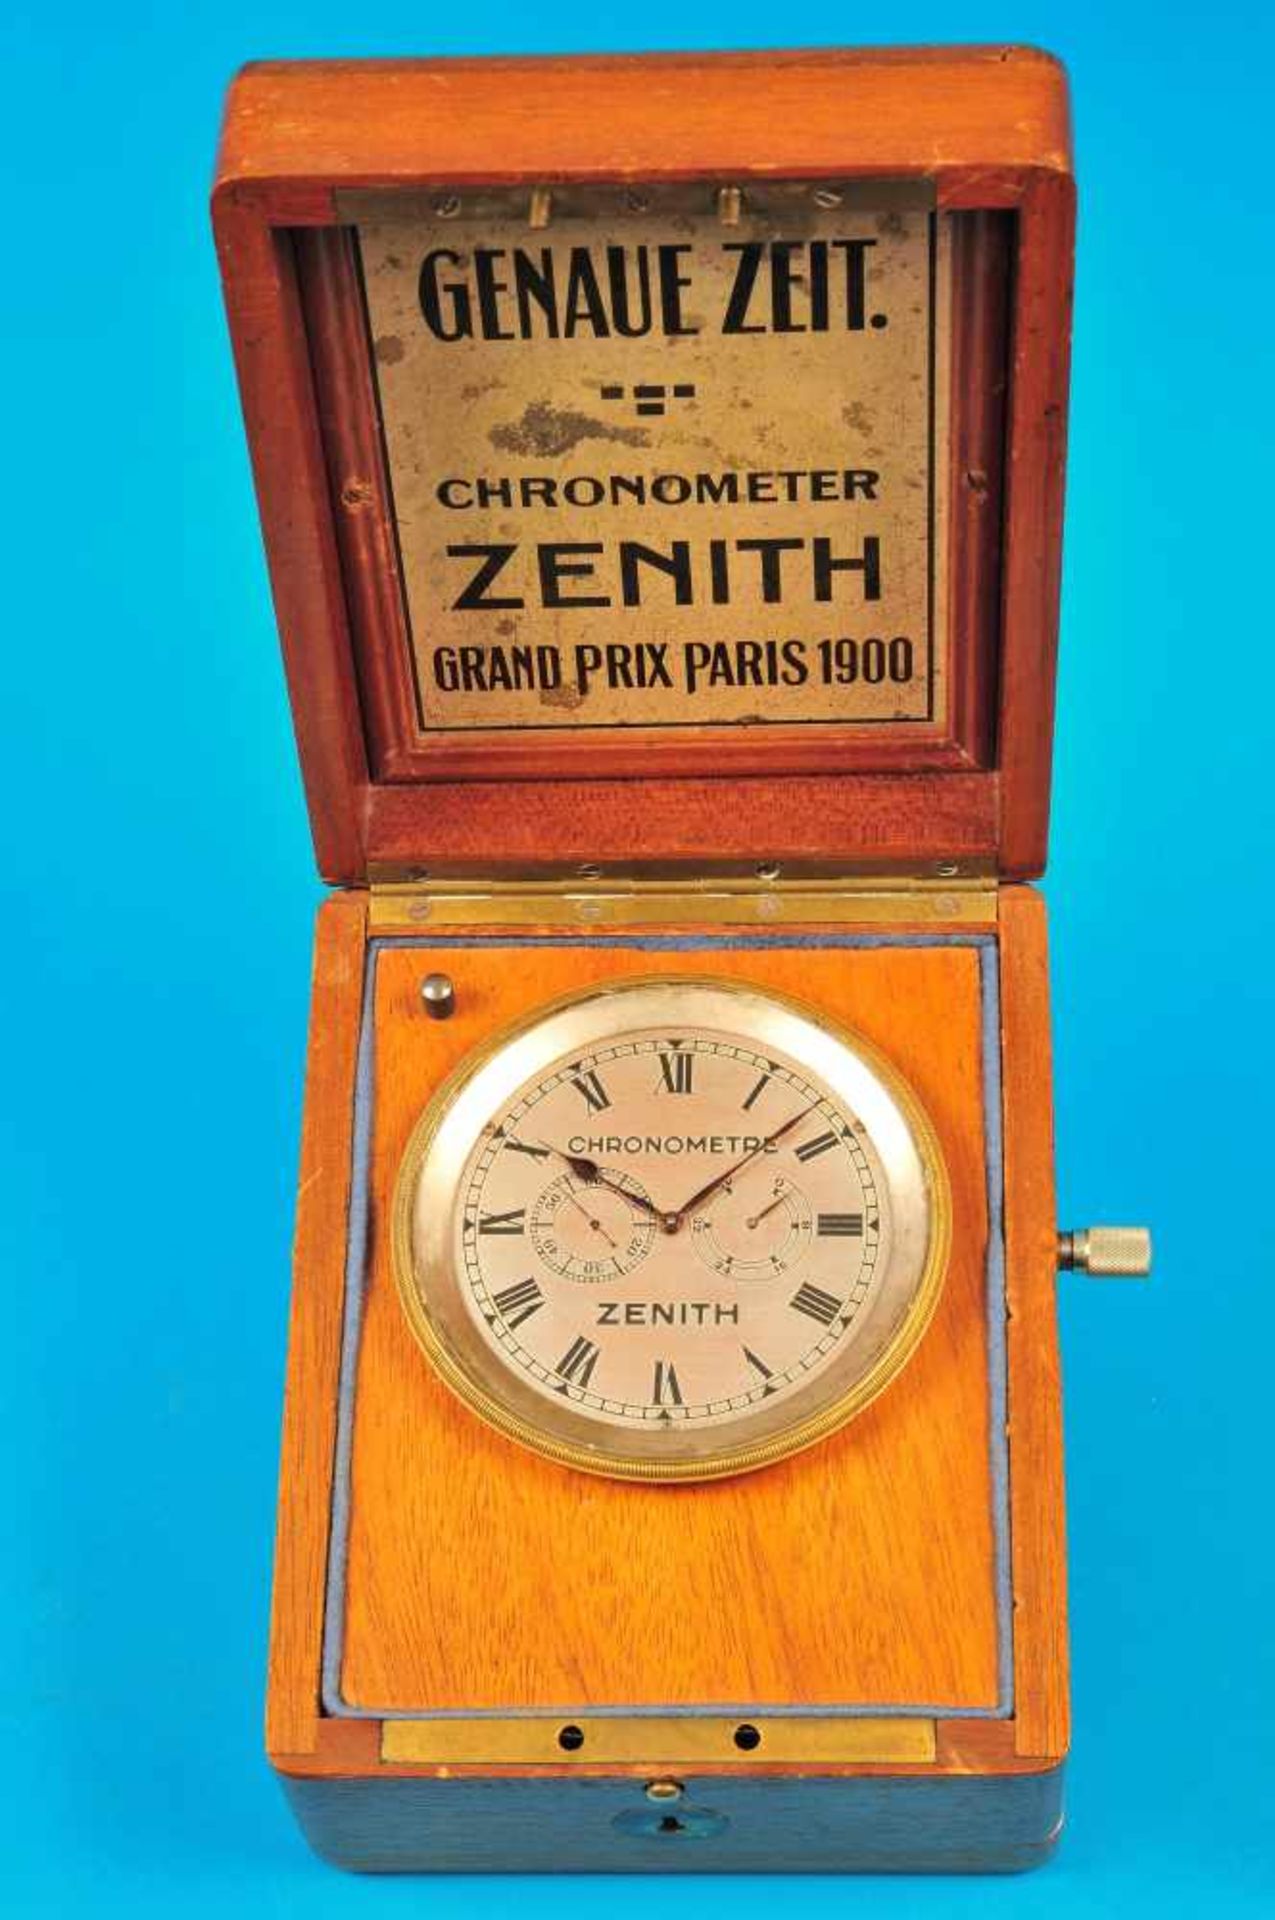 Cabin clock Zenith Chronometre "Genau Zeit"Borduhr Zenith Chronometre „Genau Zeit“ mit 40- Stunden-